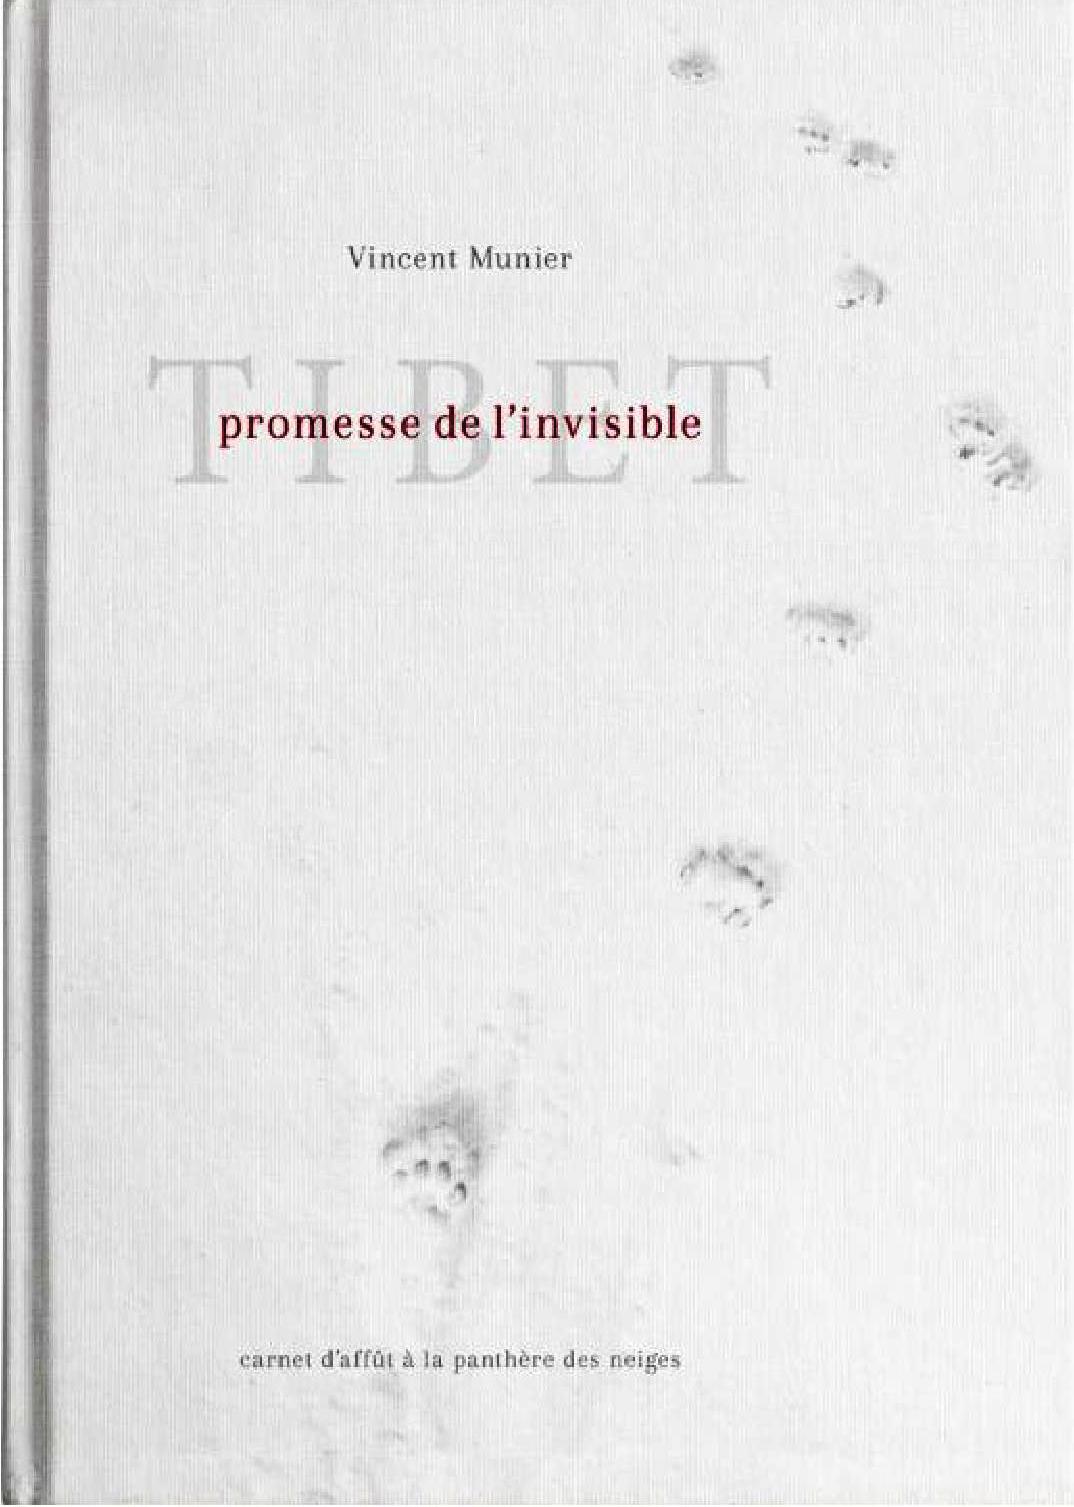 VINCENT MUNIER - TIBET PROMESSE DE L'INVISIBLE